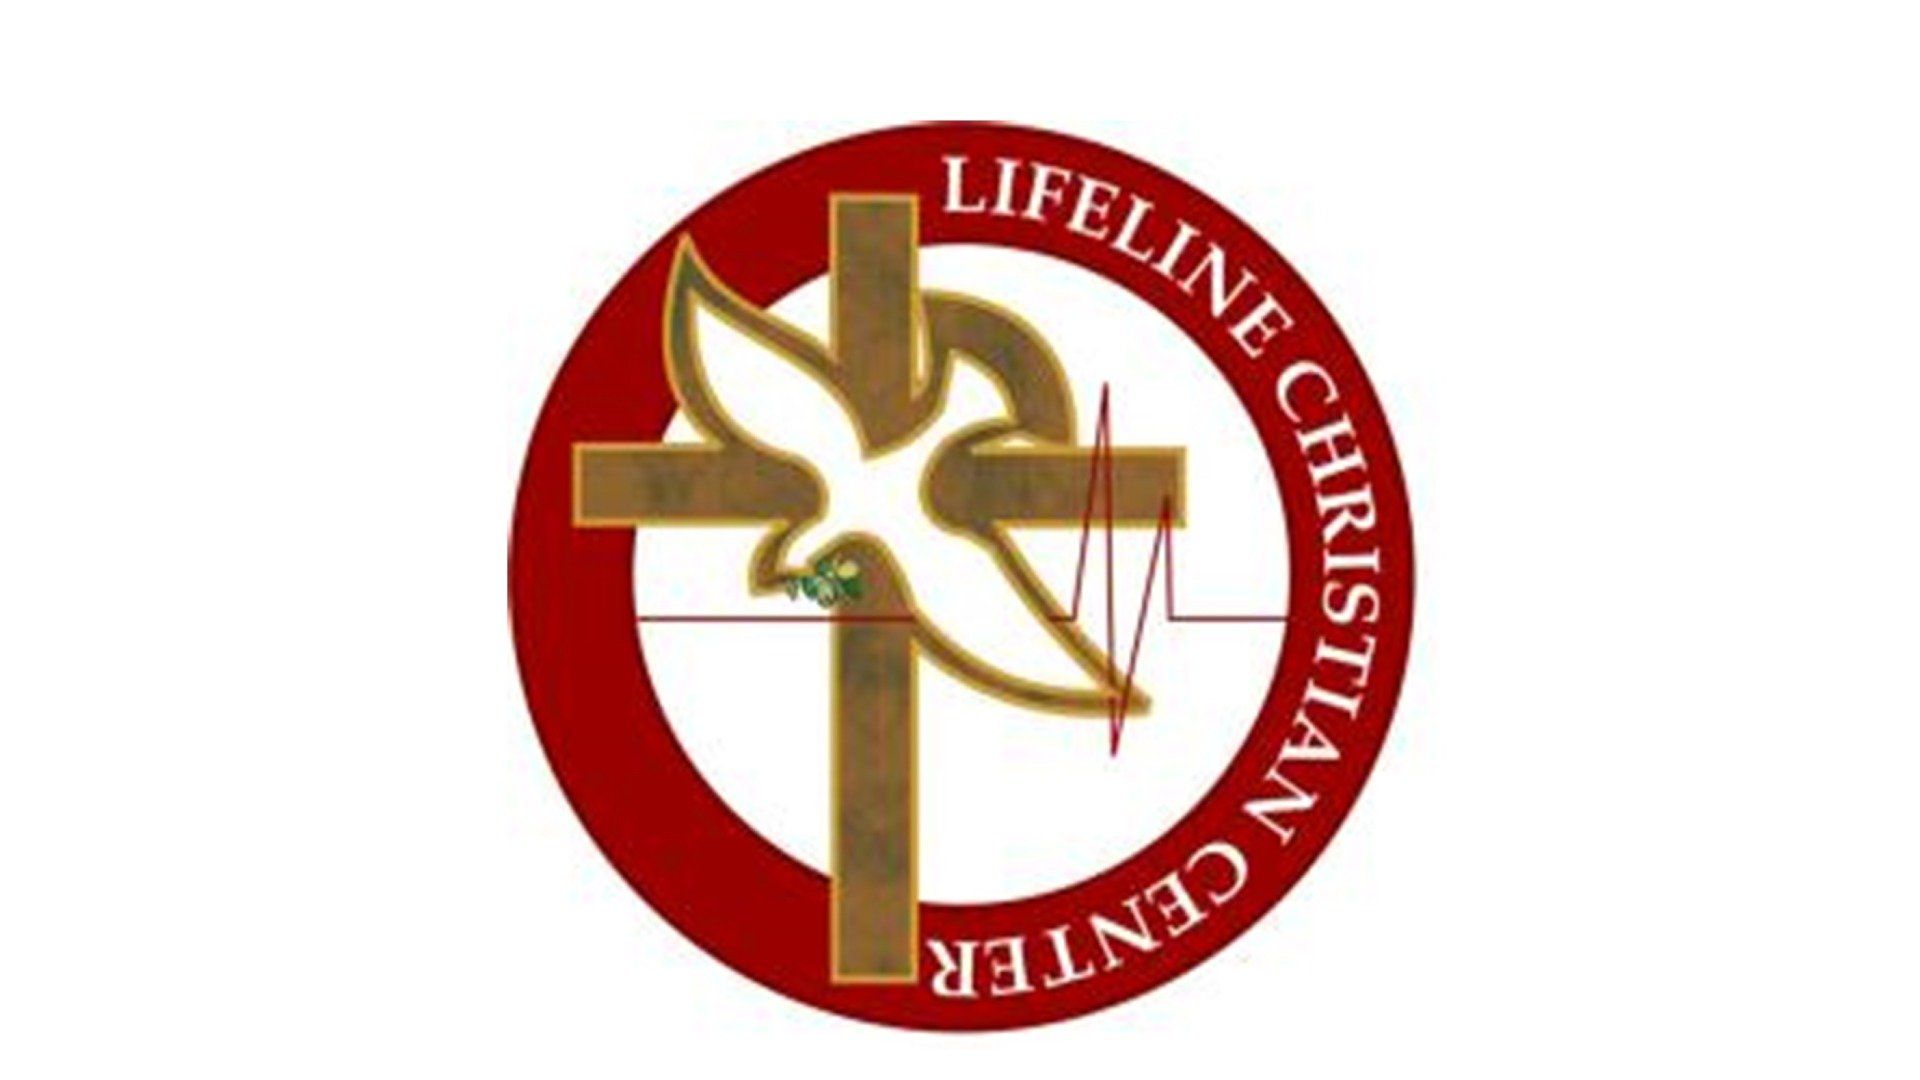 Lifeline Christian Center